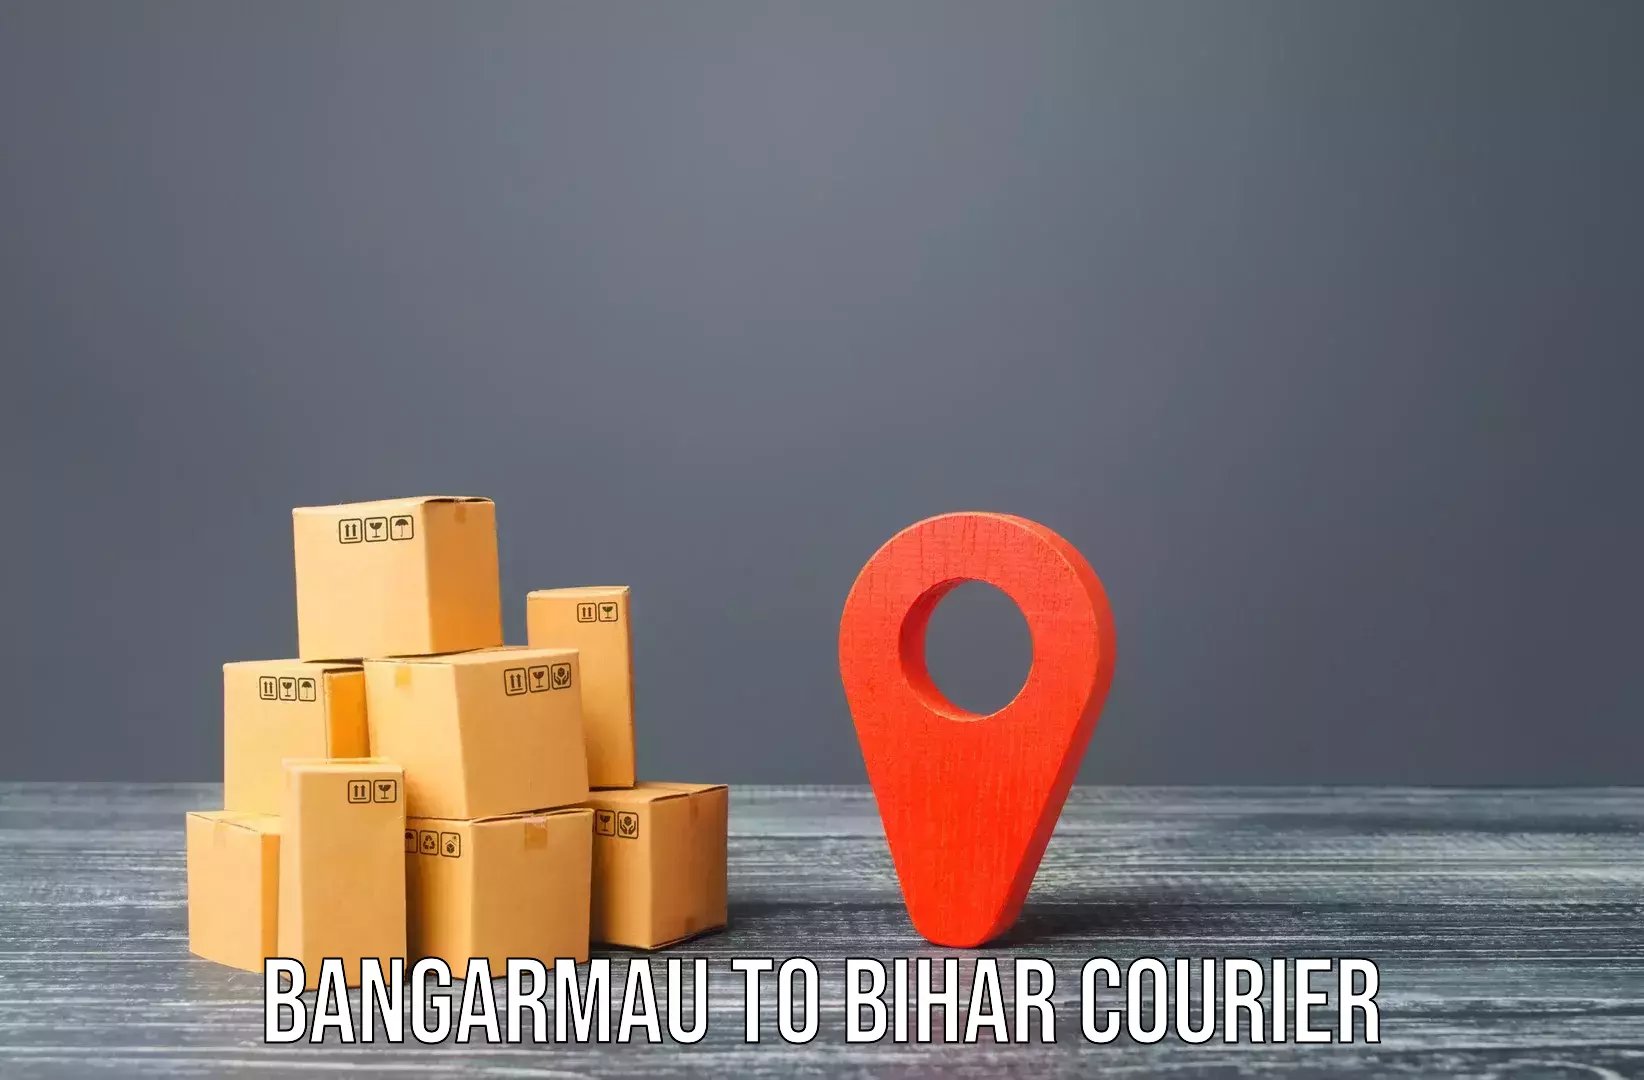 Home shifting experts Bangarmau to Piro